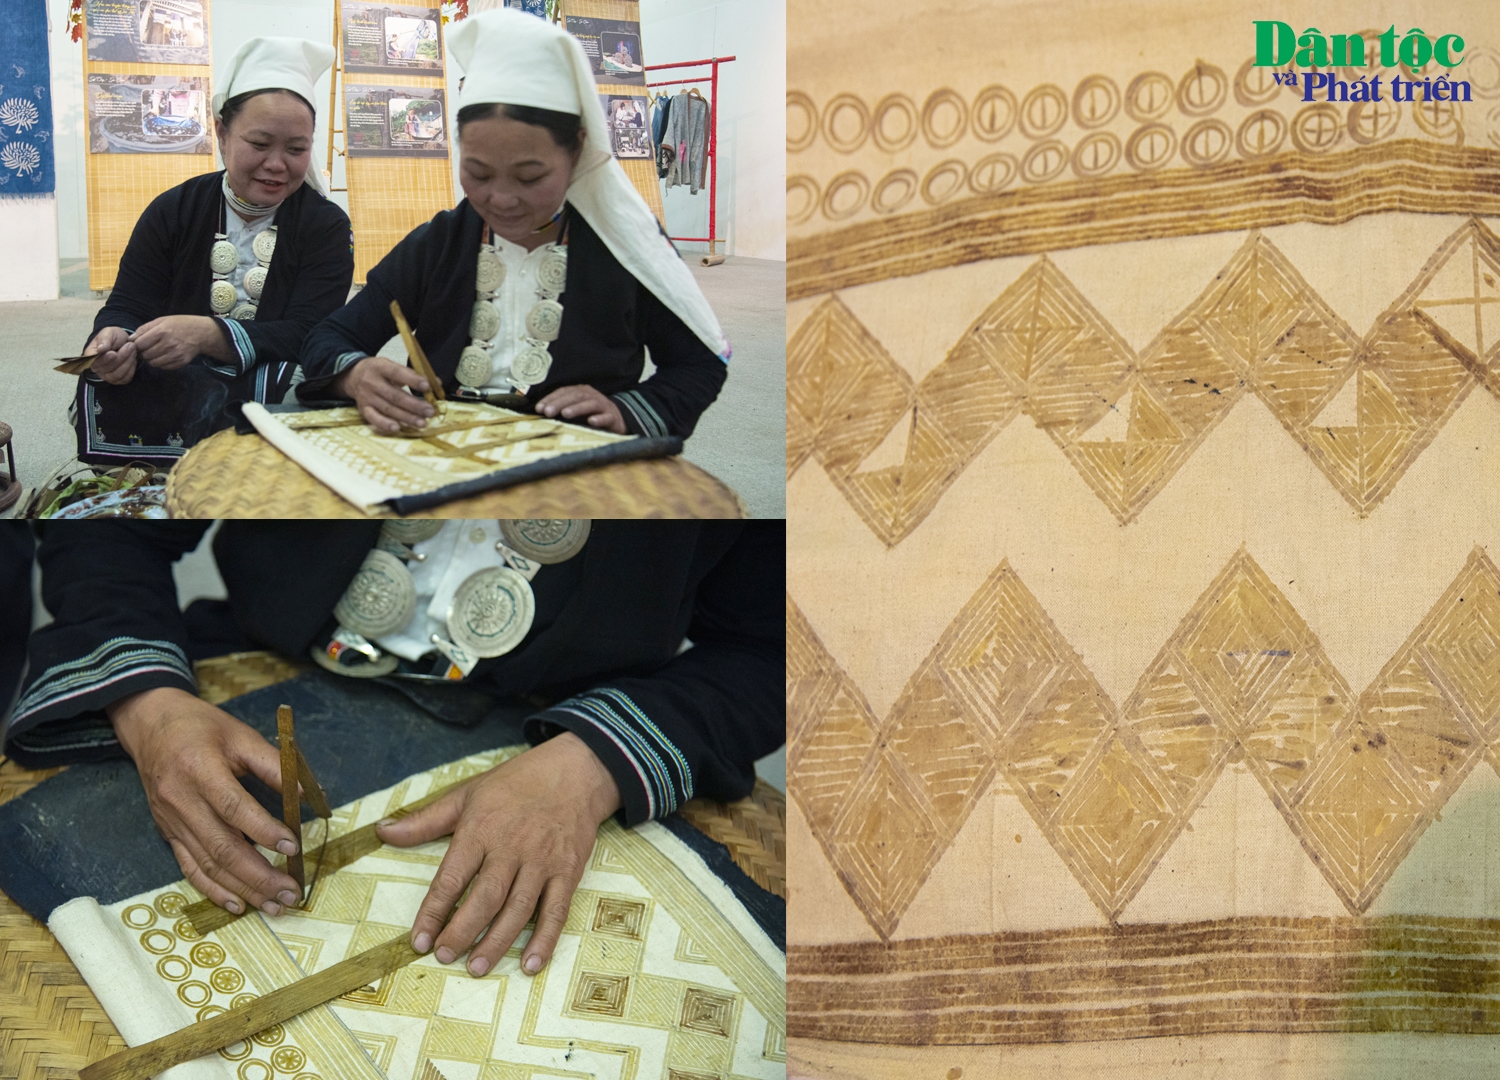 Cùng với việc phát triển nông nghiệp, từ xa xưa, đồng bào các dân tộc Mông, Dao (Dao Tiền) đã phát triển một số nghề thủ công đặc sắc như dệt vải, thêu hoa văn thổ cẩm,… trong đó có kỹ thuật vẽ hoa văn bằng sáp ong trên vải mộc.